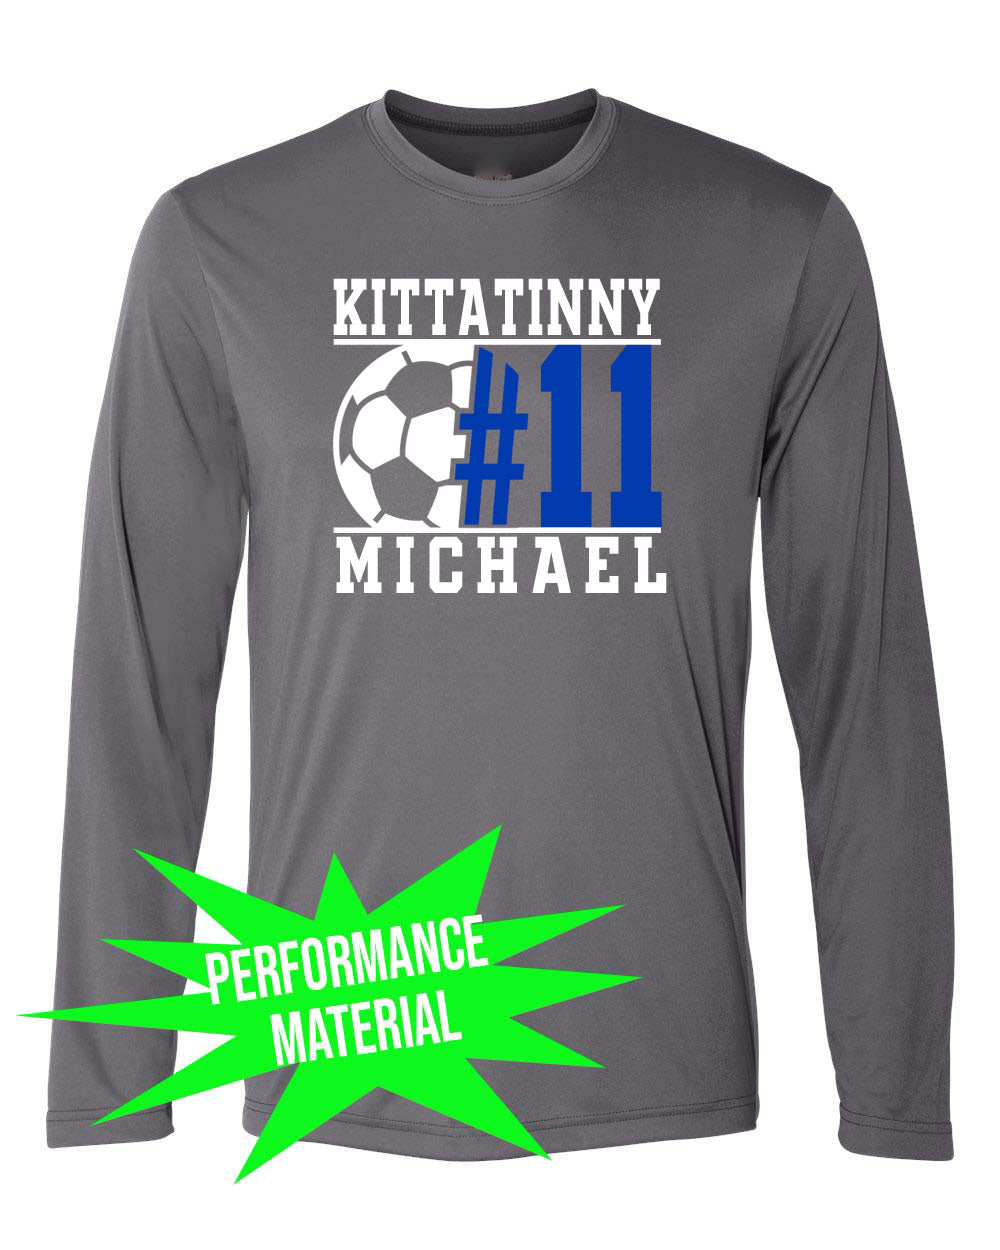 Kittatinny Soccer Performance Material Design 5 Long Sleeve Shirt